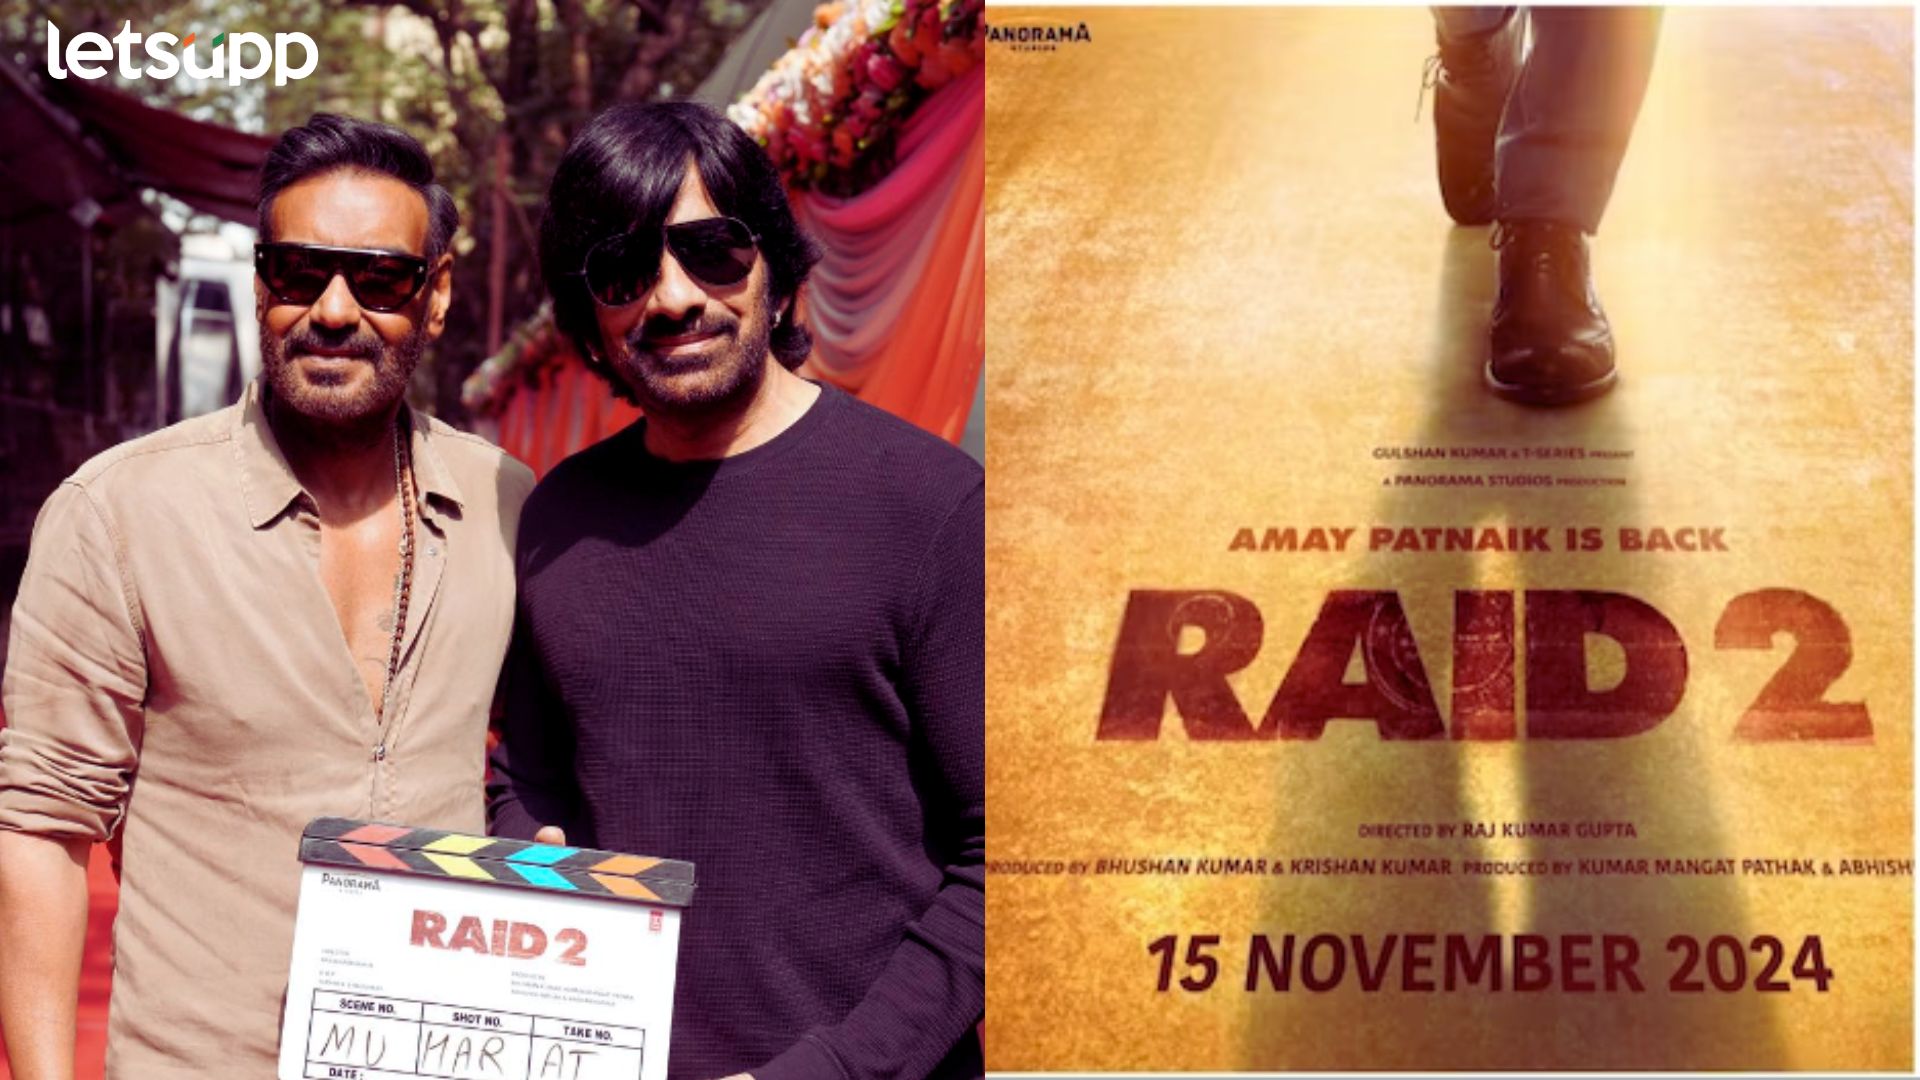 Raid 2: ना खाली हाथ आये थे, ना खाली हात जाएंगे; अजय देवगणच्या ‘रेड 2’ च्या शूटिंगला सुरुवात